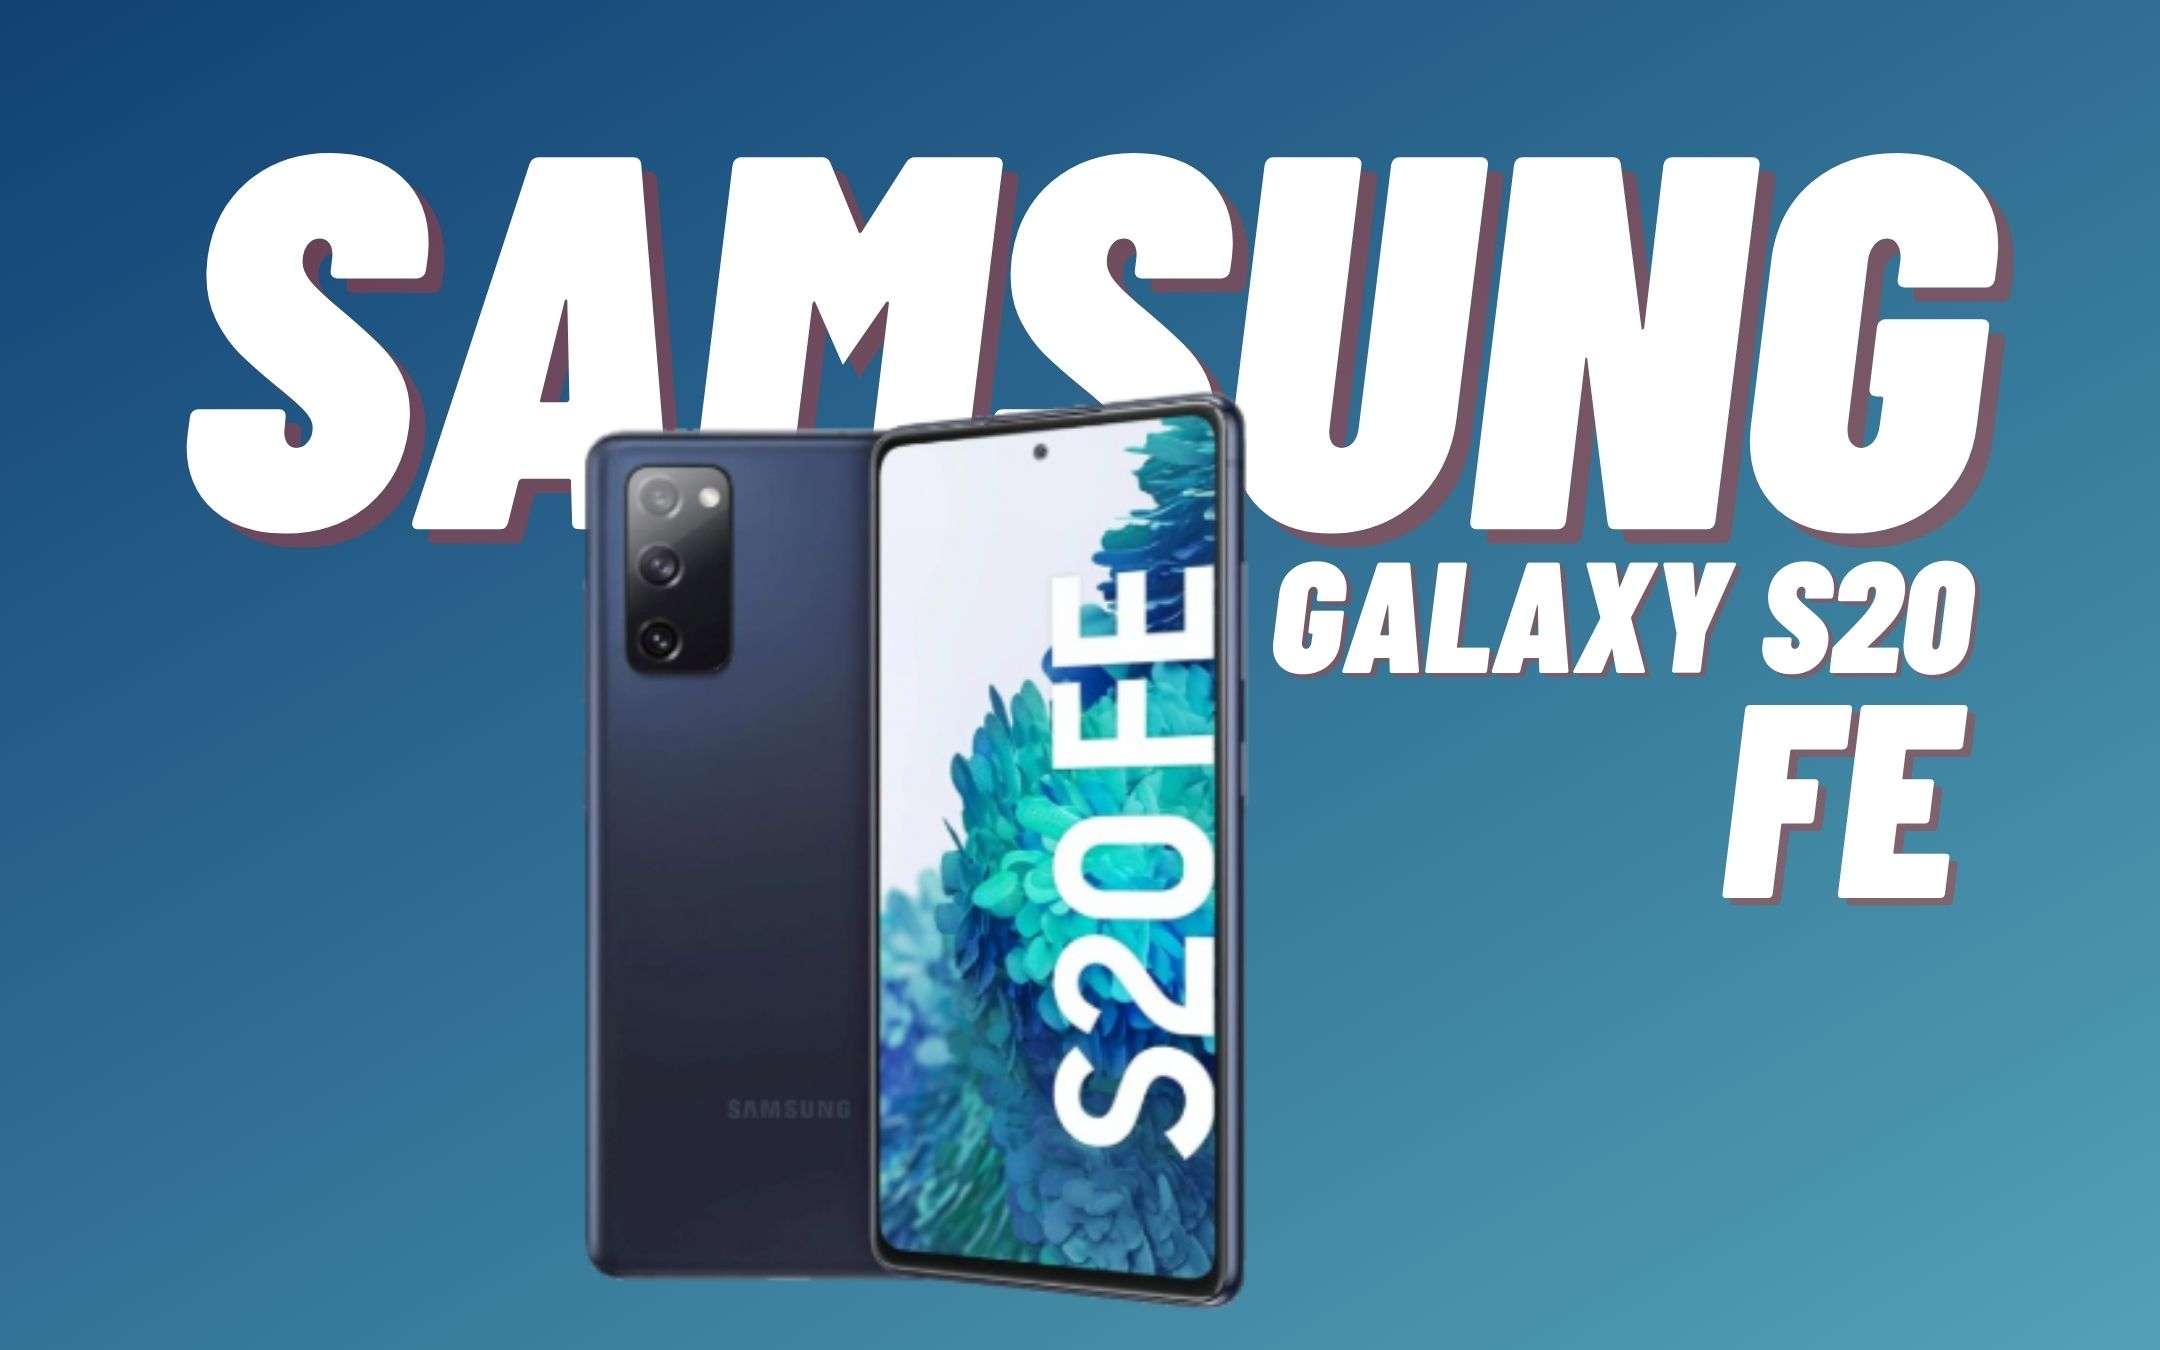 Samsung Galaxy S20 FE è stato un SUCCESSO senza precedenti